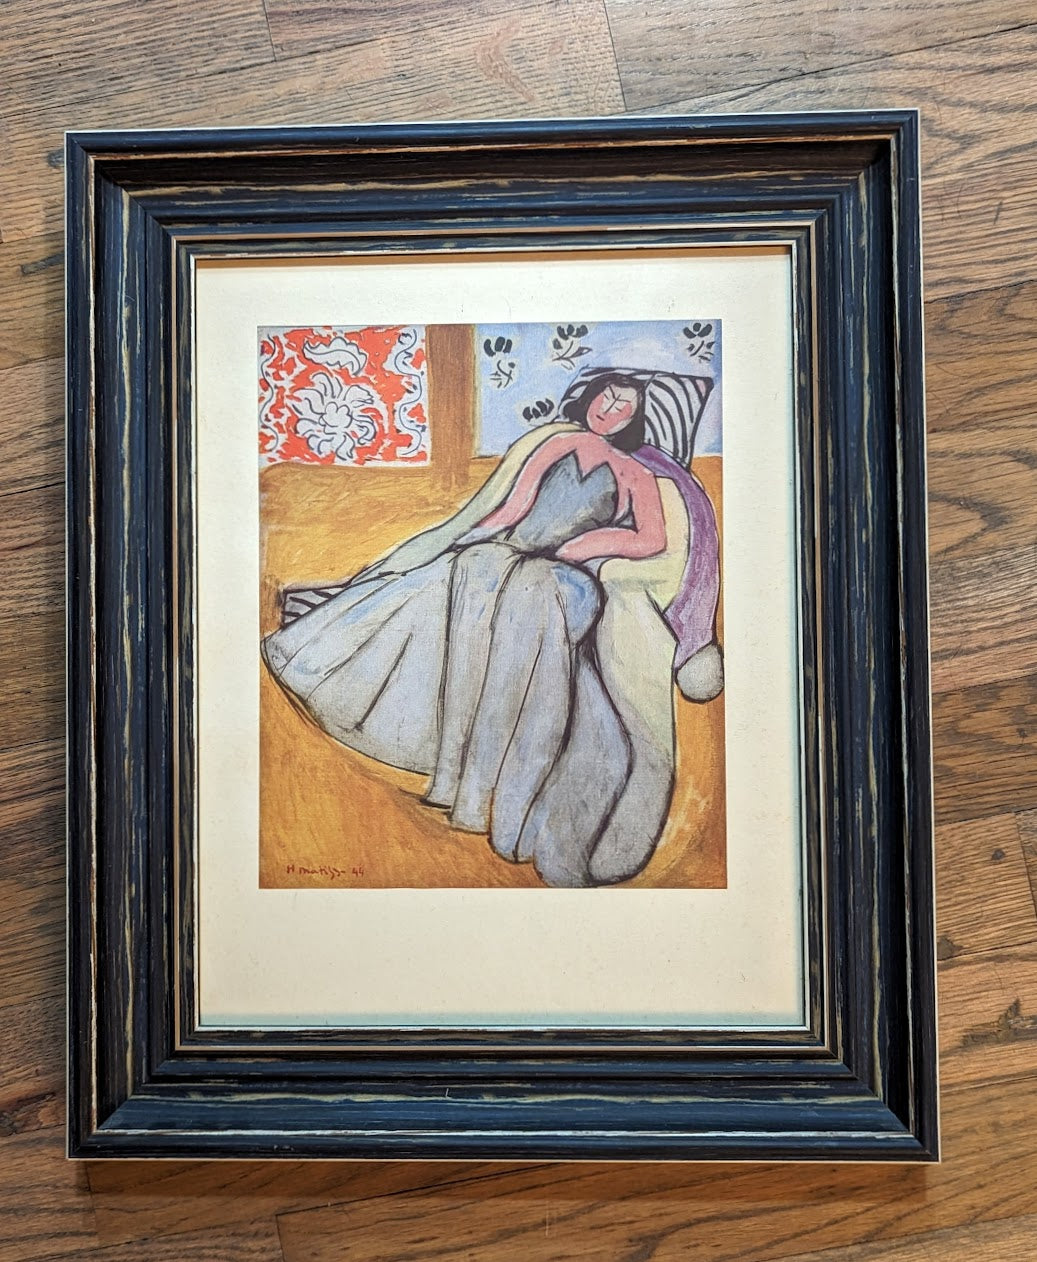 RARE 1946 Henri Matisse “Jeune Femme A La Pelisse” Lithograph